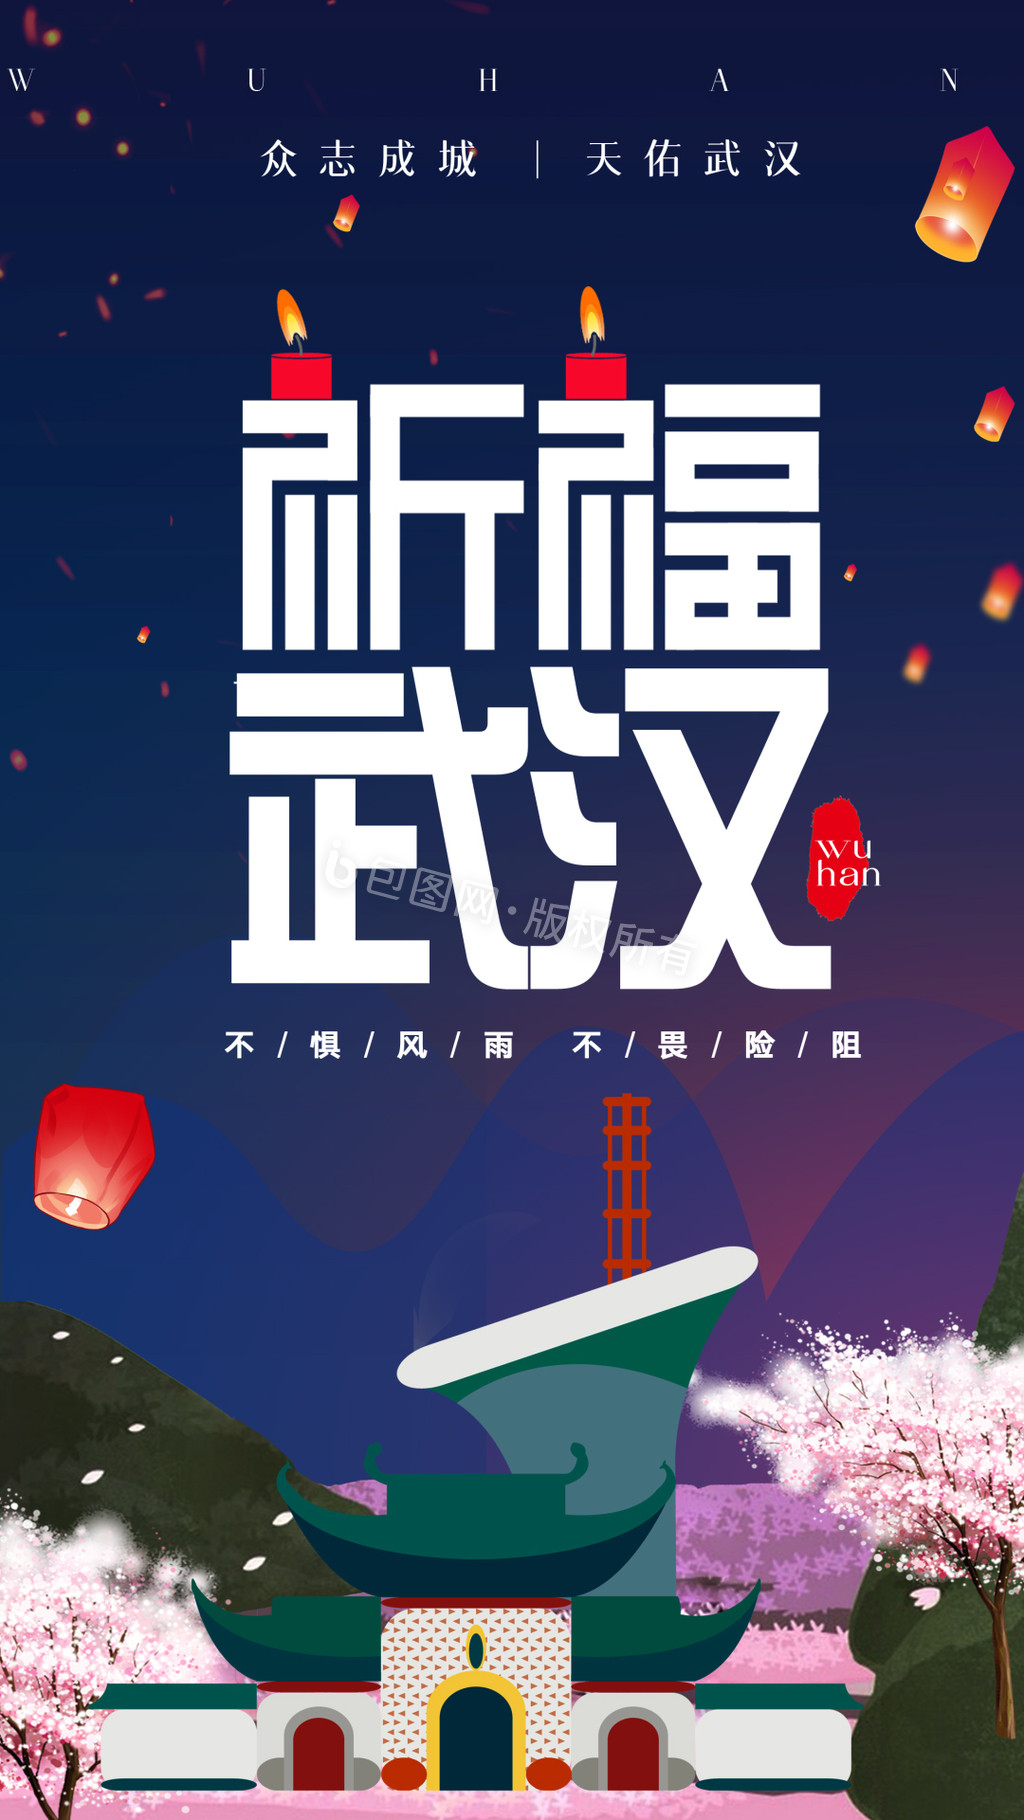 祈福武汉新型冠状病毒宣传动态海报GIF图片